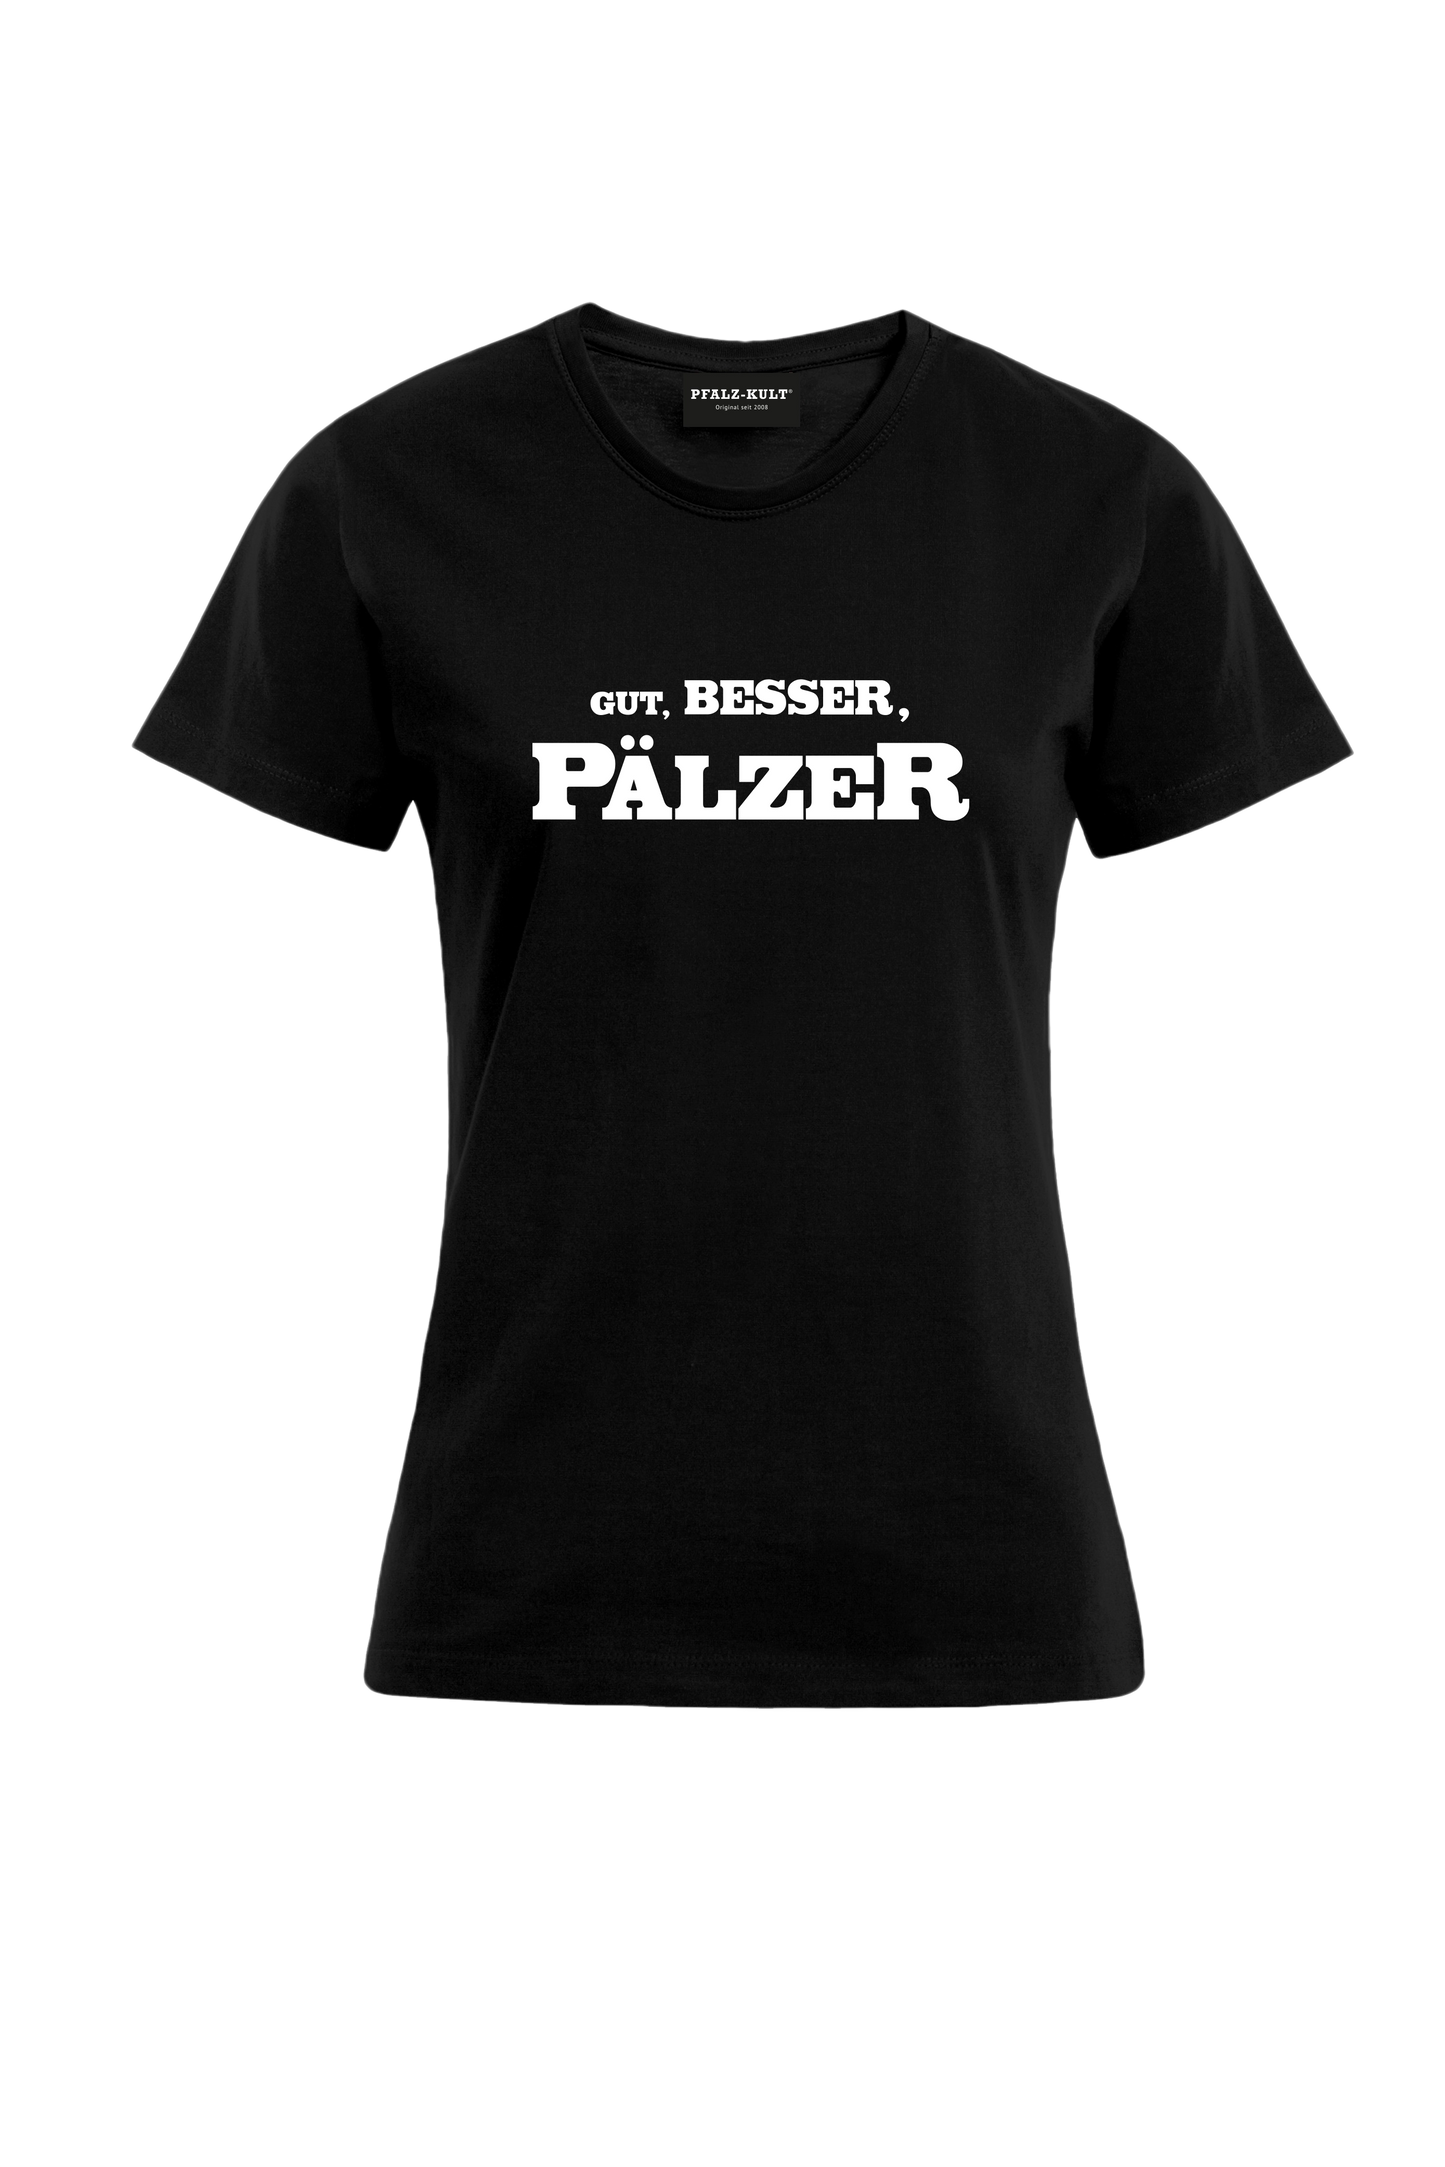 Gut, besser, Pälzer Damen T-Shirt in schwarz. Geschenkidee auf pfälzisch von Pfalz-Kult aus DÜW